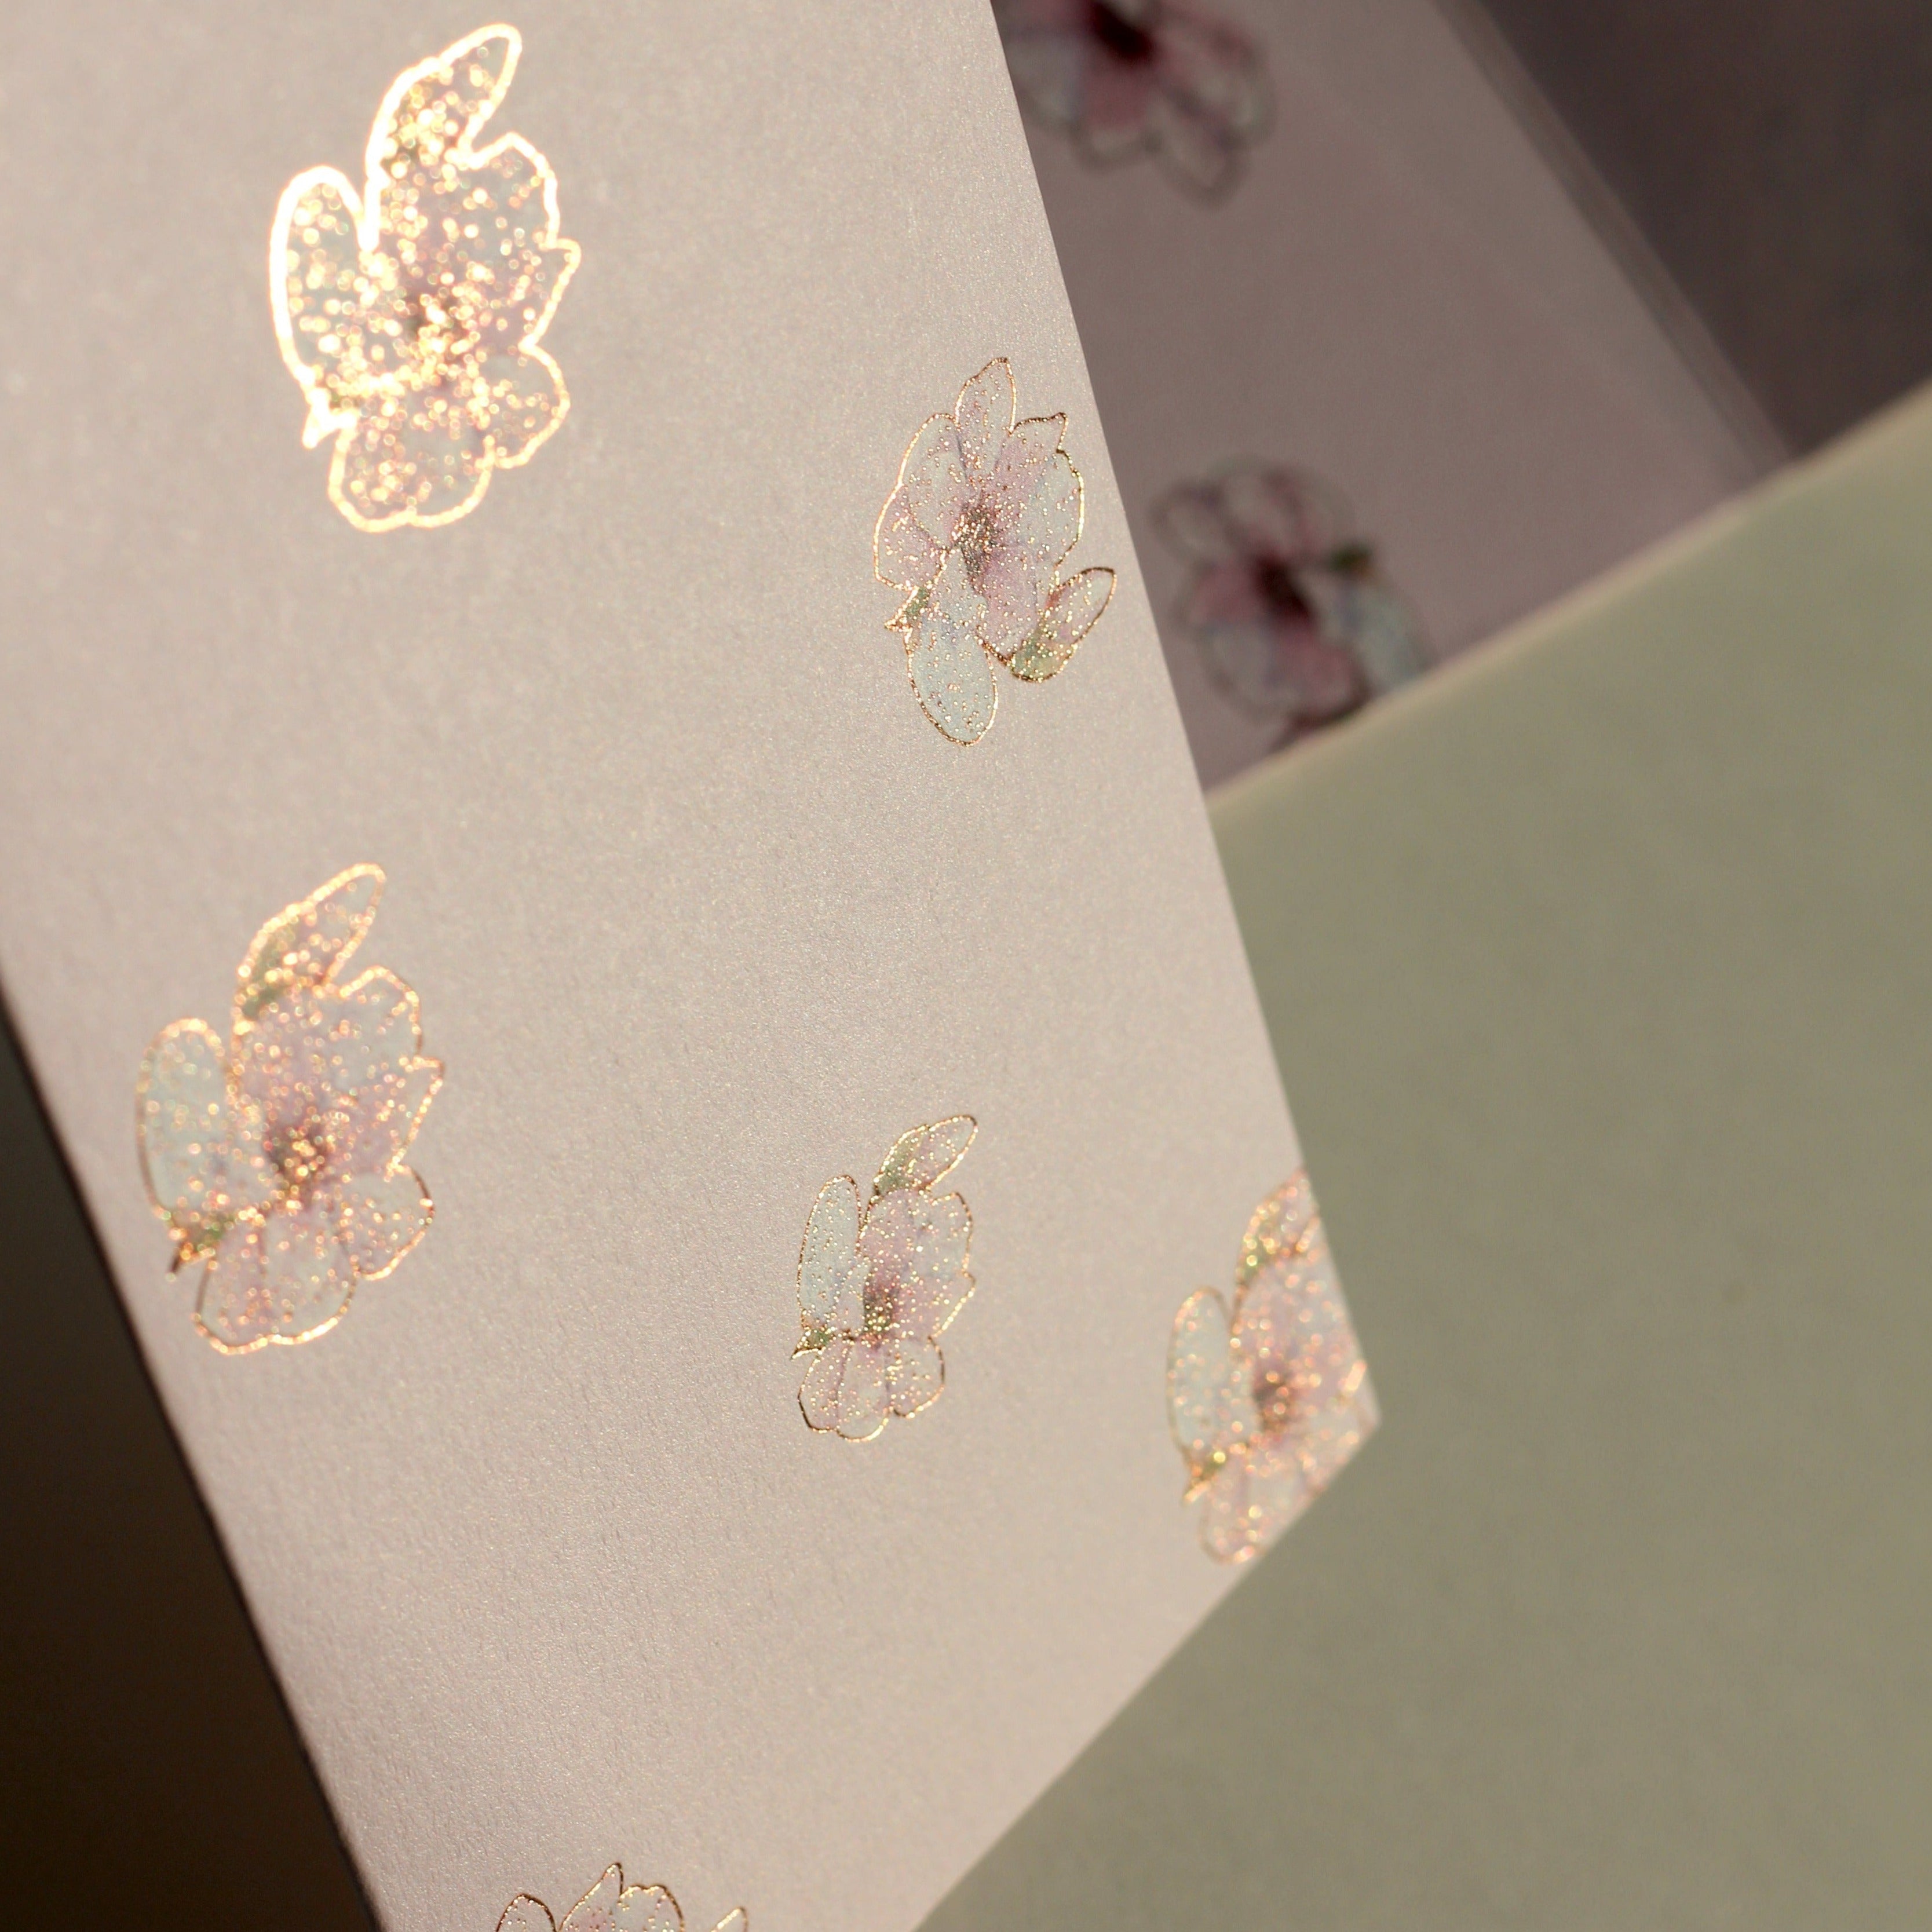 Misty rose money envelopes (foiling) set of 12